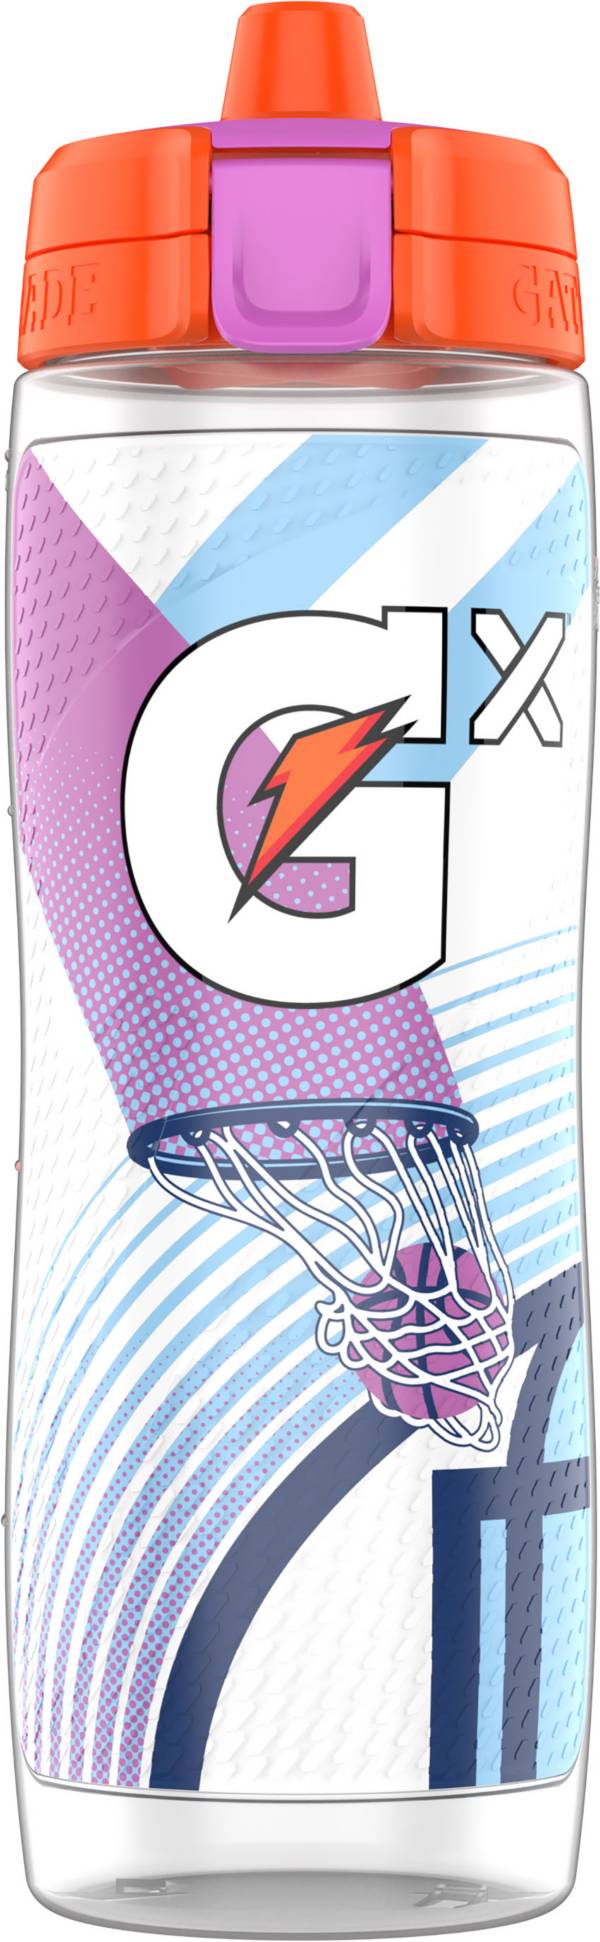 Gatorade Gx 30 oz. Fuel Tomorrow Bottle product image